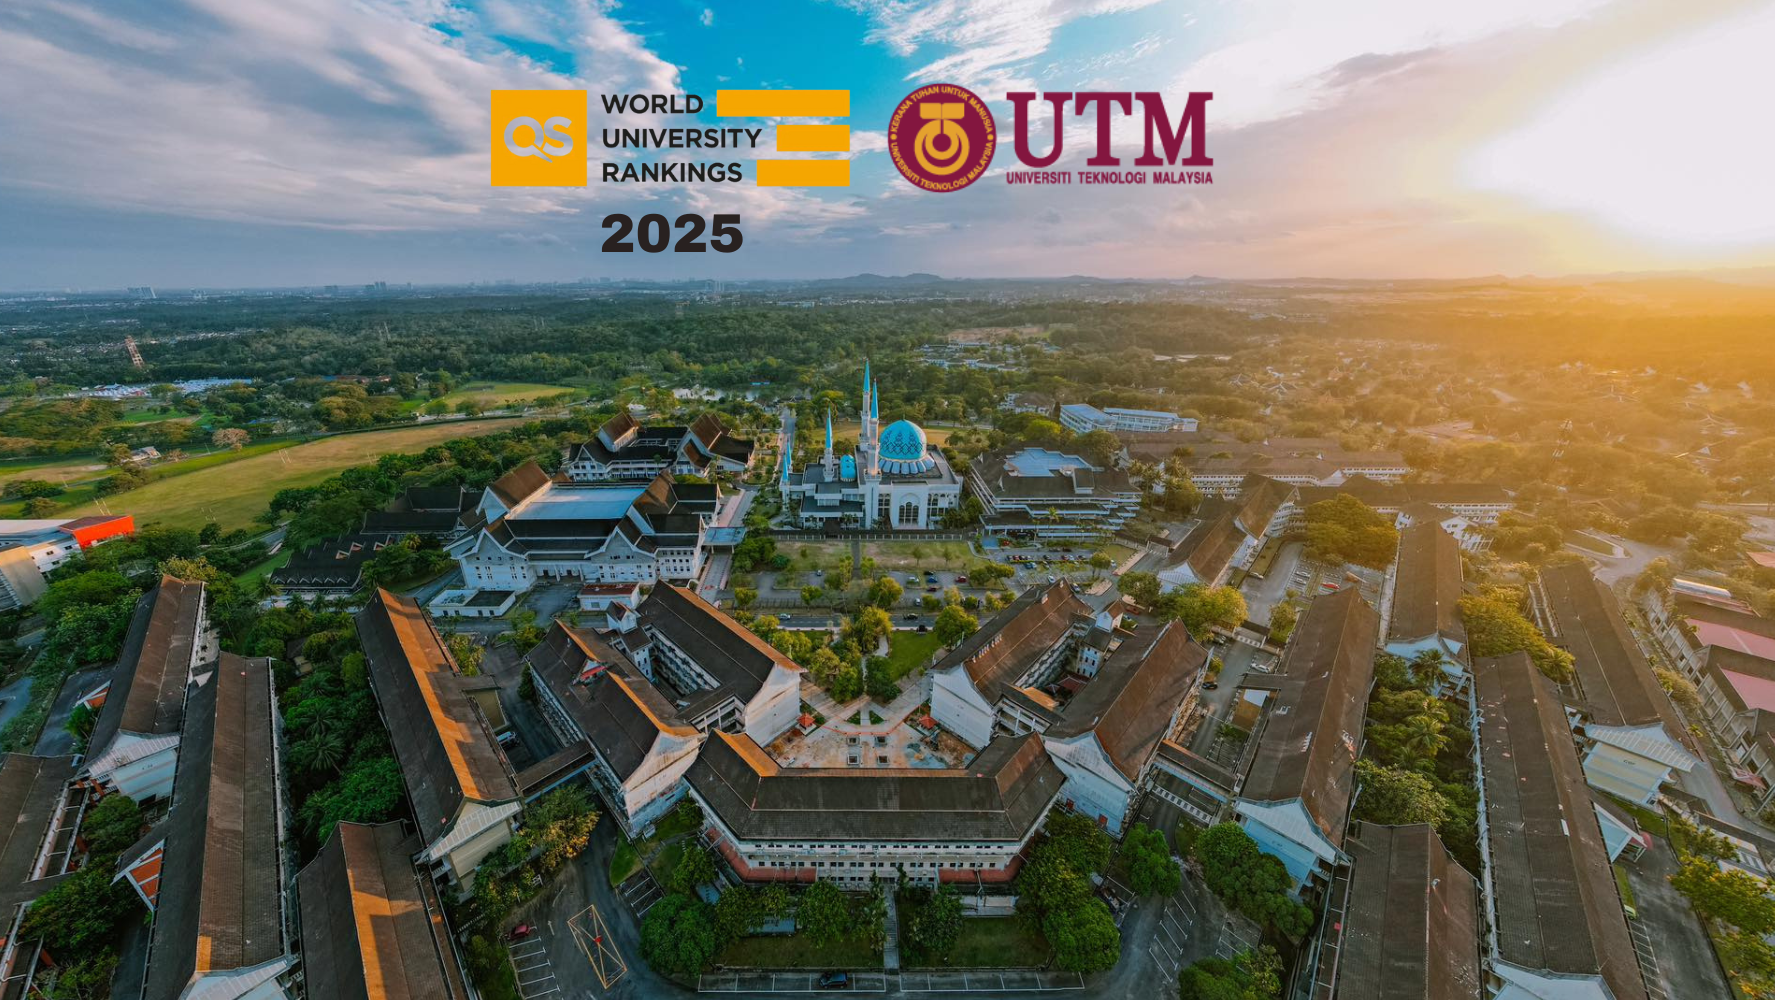 马来西亚理工大学在 2025 年 QS 世界大学排名中再创佳绩